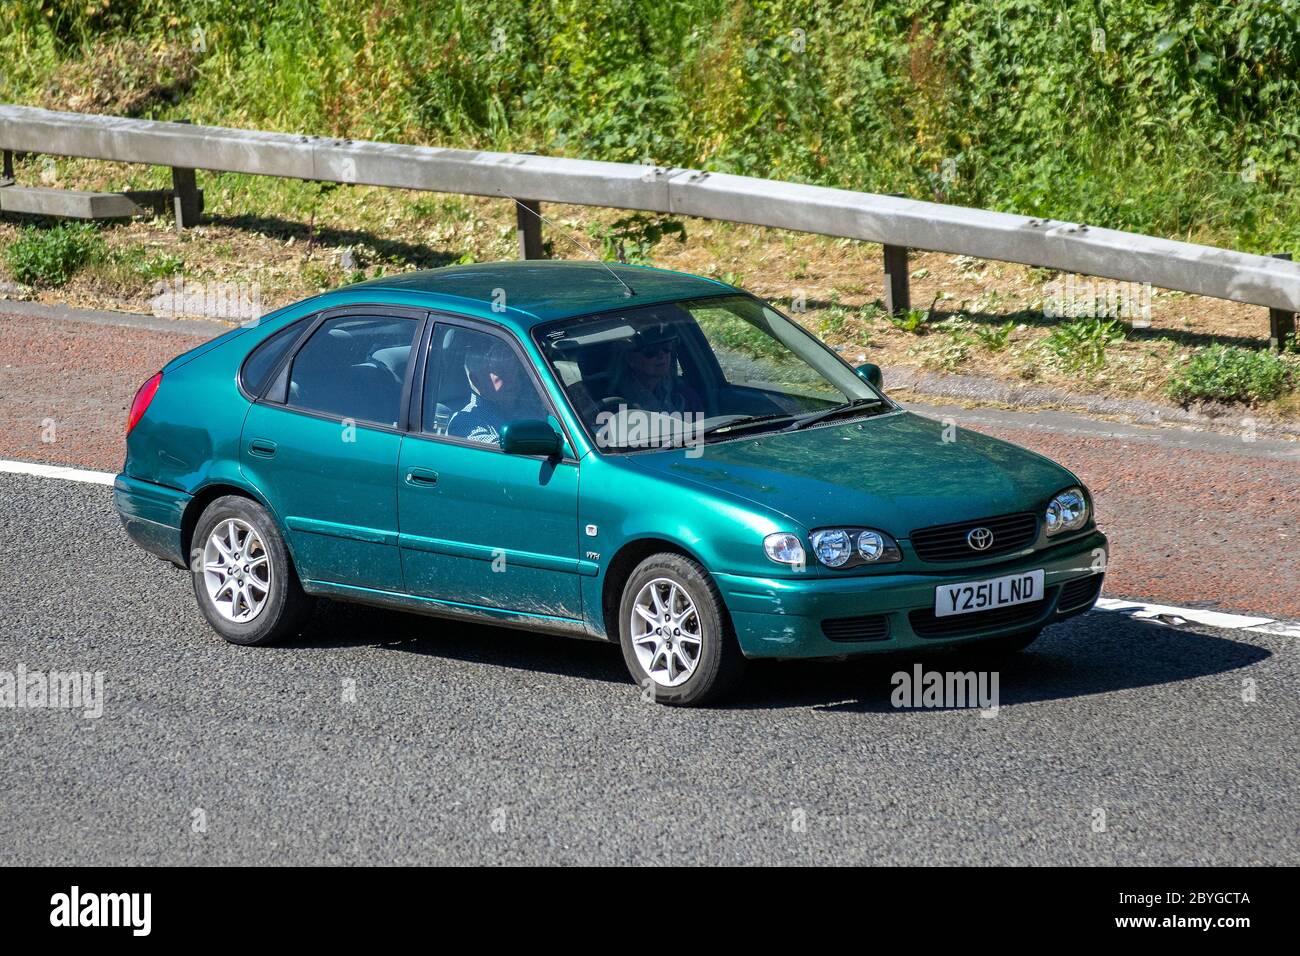 2001 grün Toyota Corolla VVTI GS; Fahrzeug Verkehr bewegende Fahrzeuge, Autos fahren Fahrzeug auf britischen Straßen, Motoren, Autofahren auf der Autobahn M6 Stockfoto